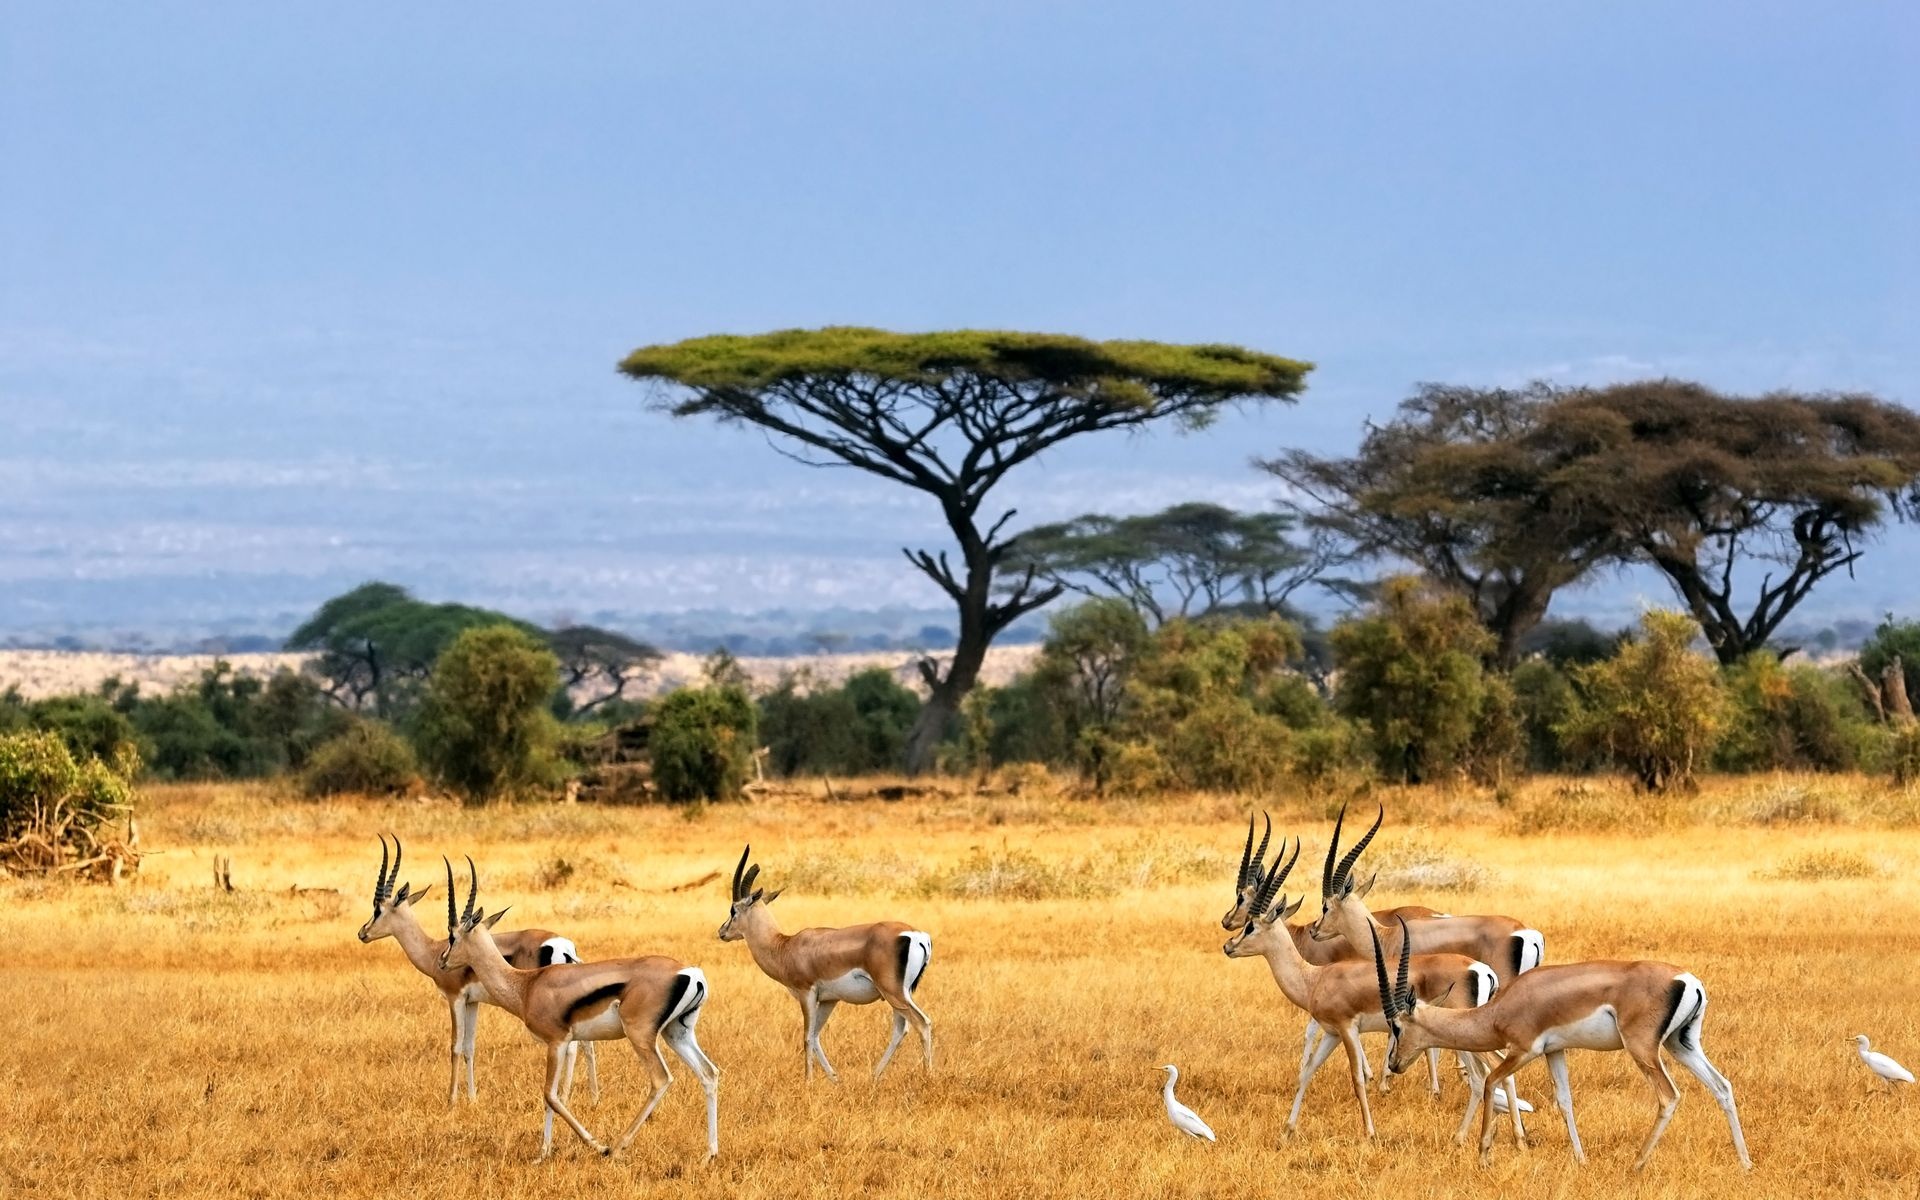 African safari, Exquisite wallpapers, Wildlife encounters, Nature's beauty, 1920x1200 HD Desktop